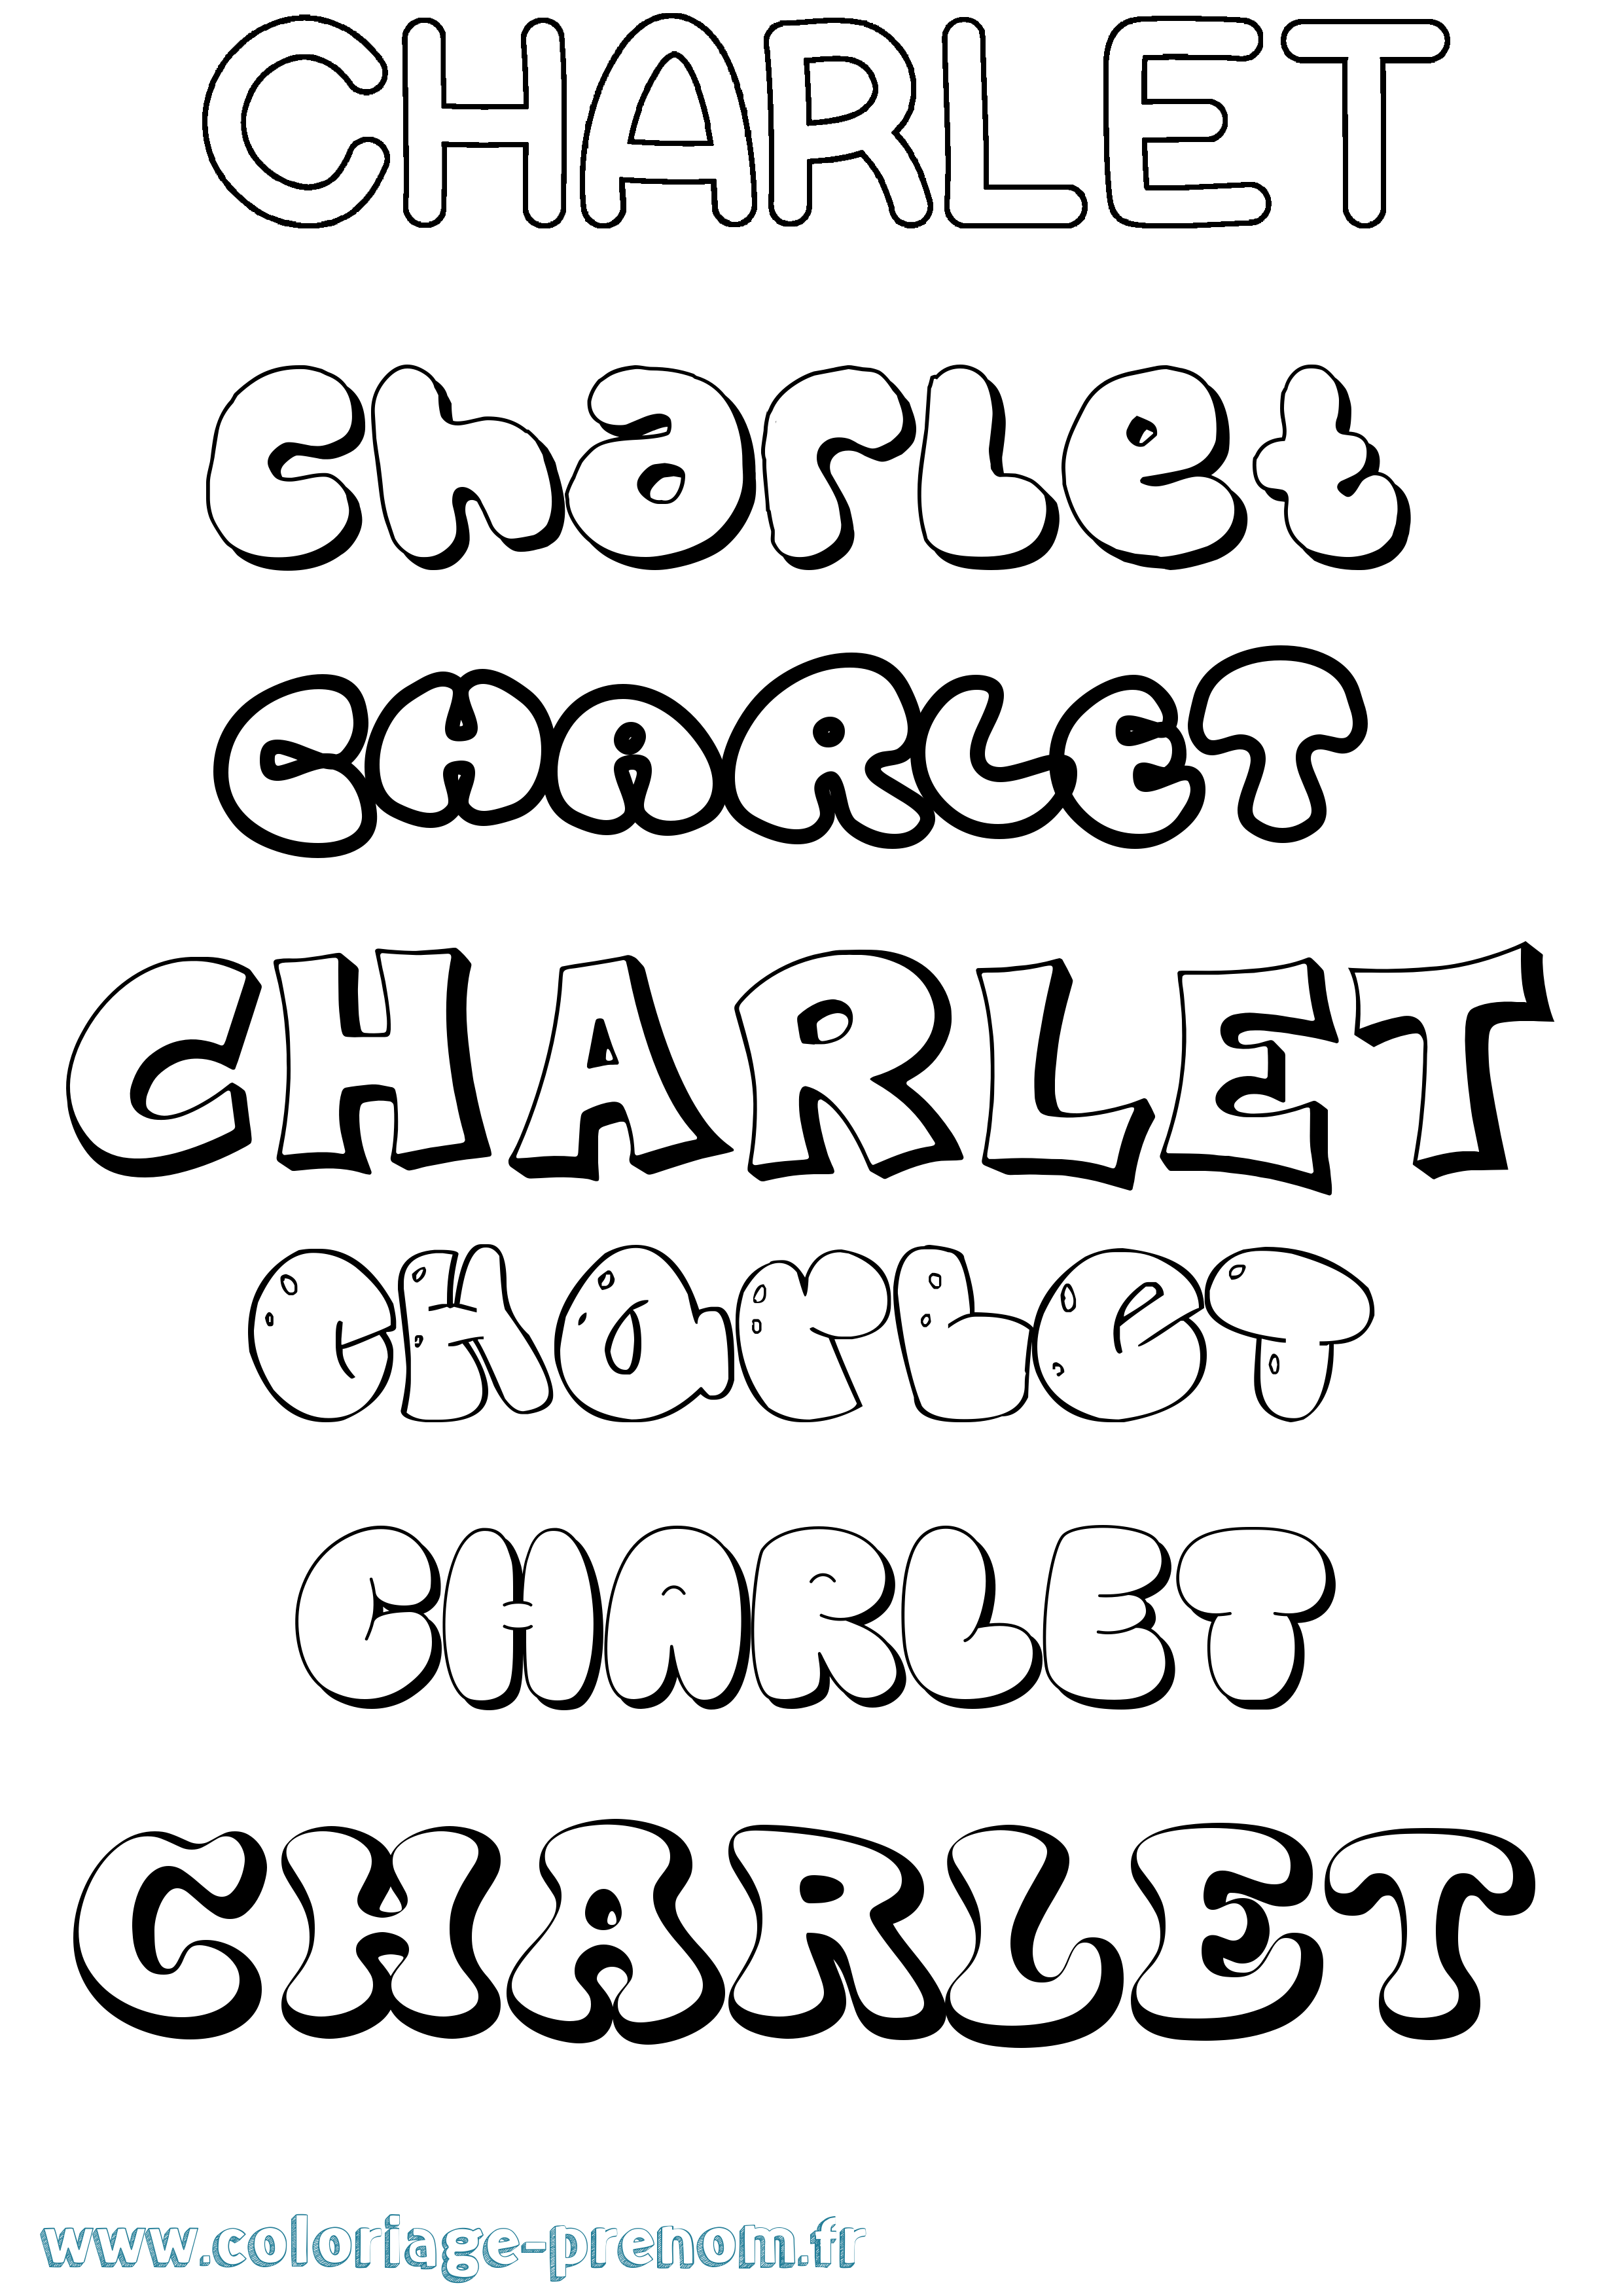 Coloriage prénom Charlet Bubble